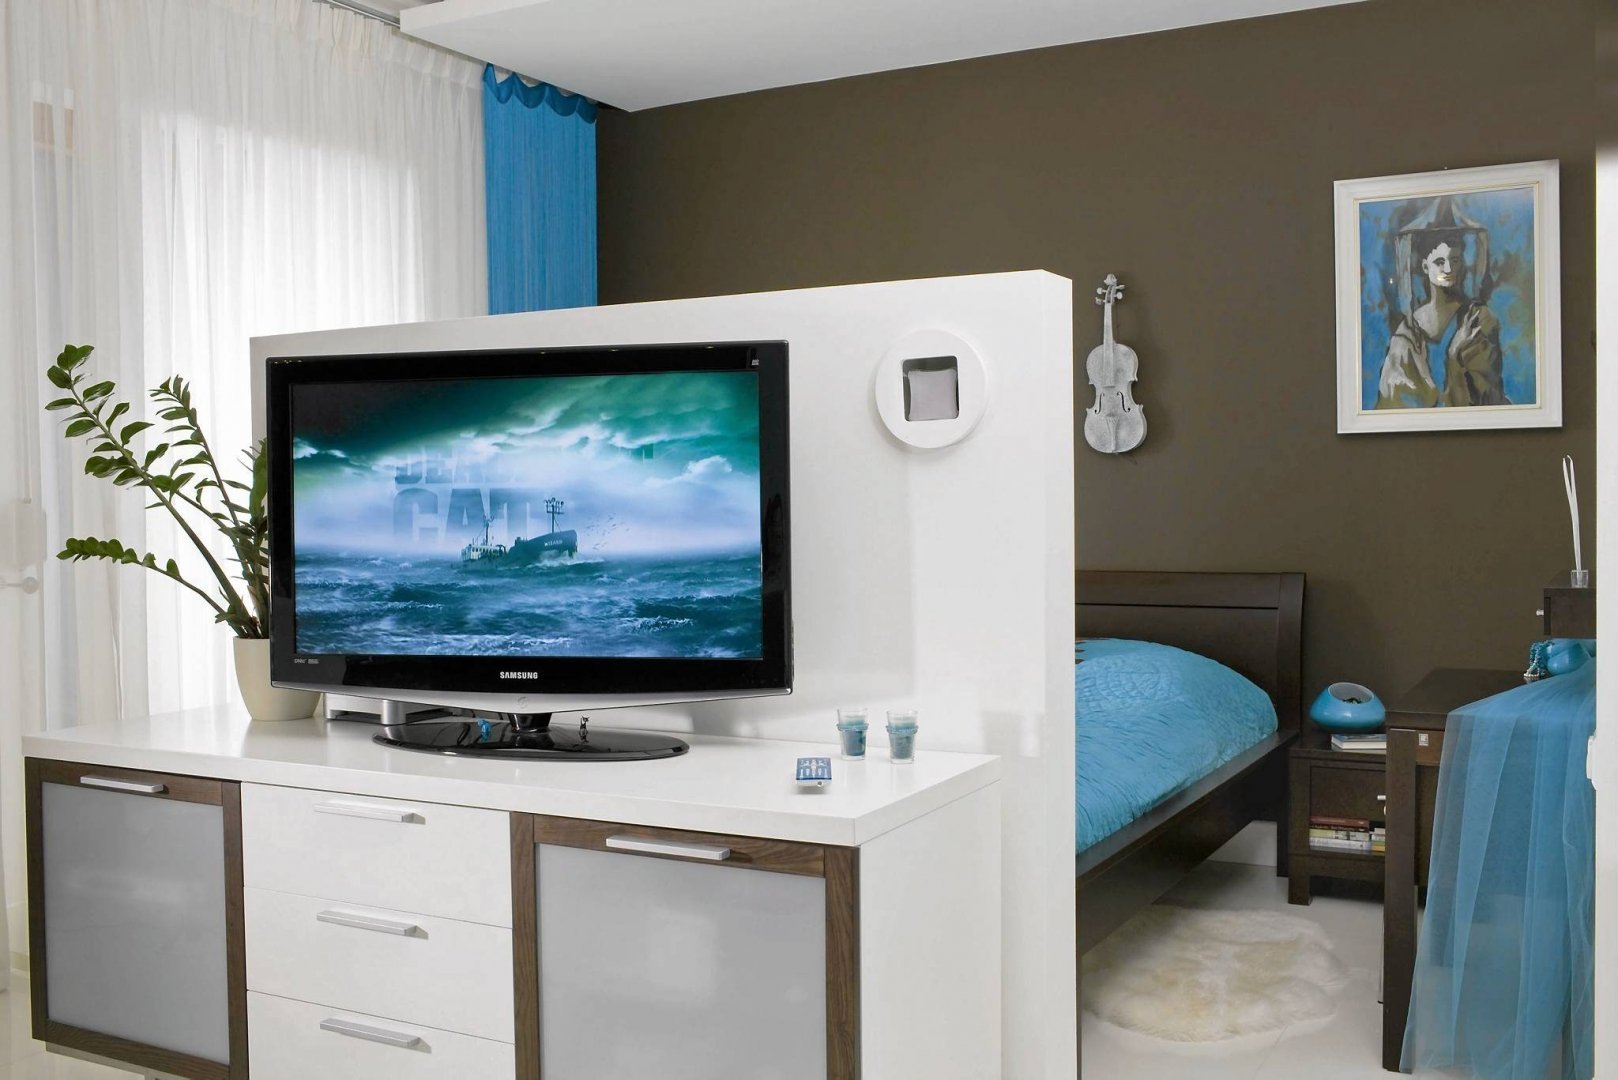 2 телевизора в 1 комнате. Телевизор в спальне. Телевизор в центре комнаты. Спальня с перегородкой для телевизора. Телевизор на тумбе посреди комнаты.